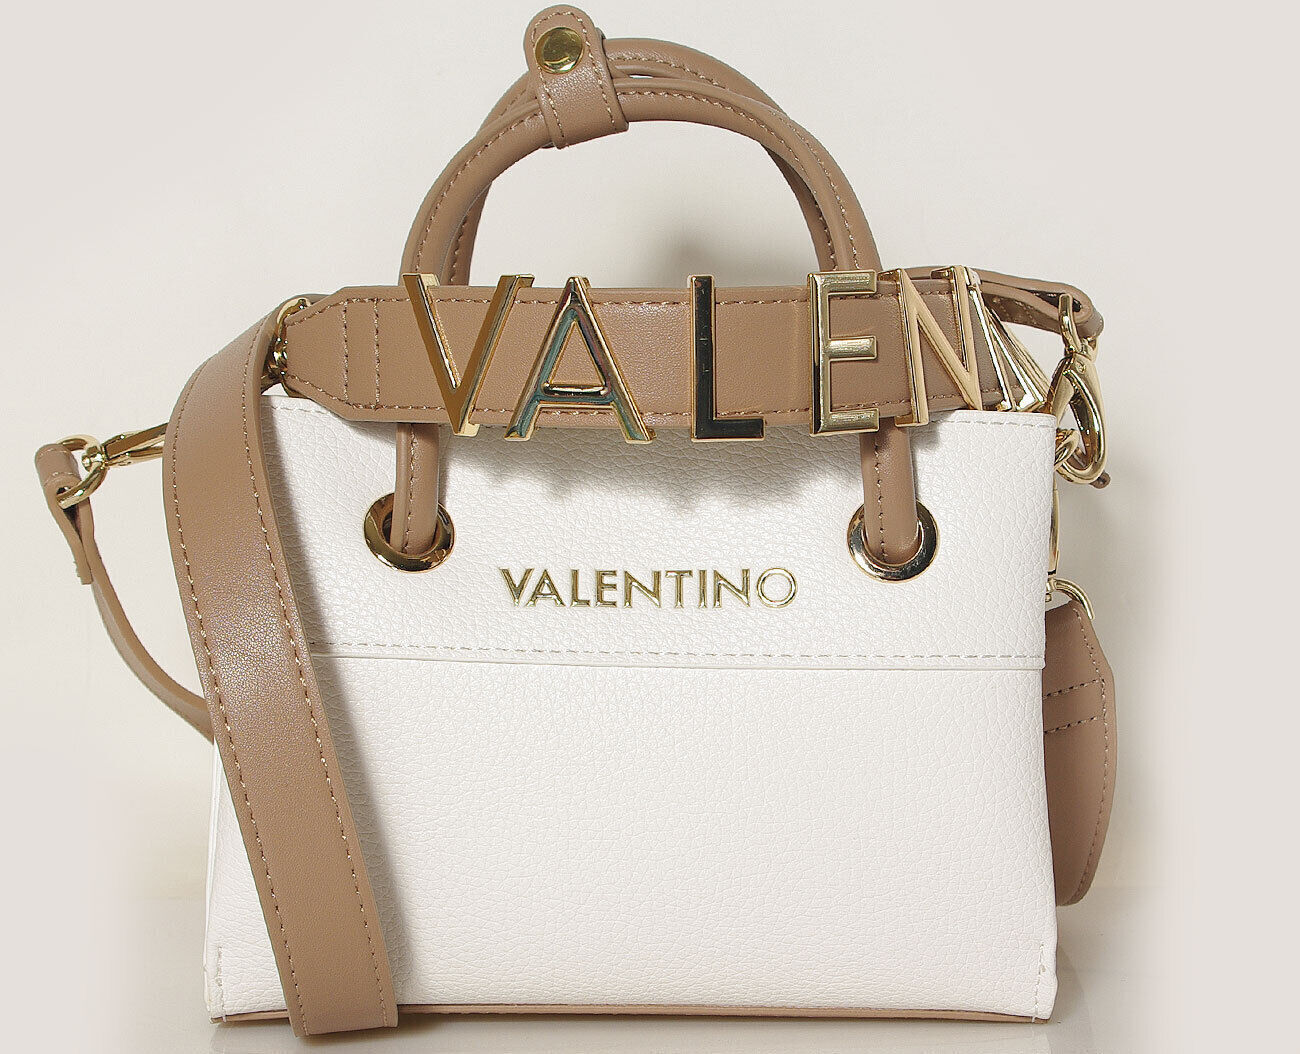 Valentino bags ALEXIA bag bianco cuoio borse a mano VBS5A805 Shopping 21x15x9 cm